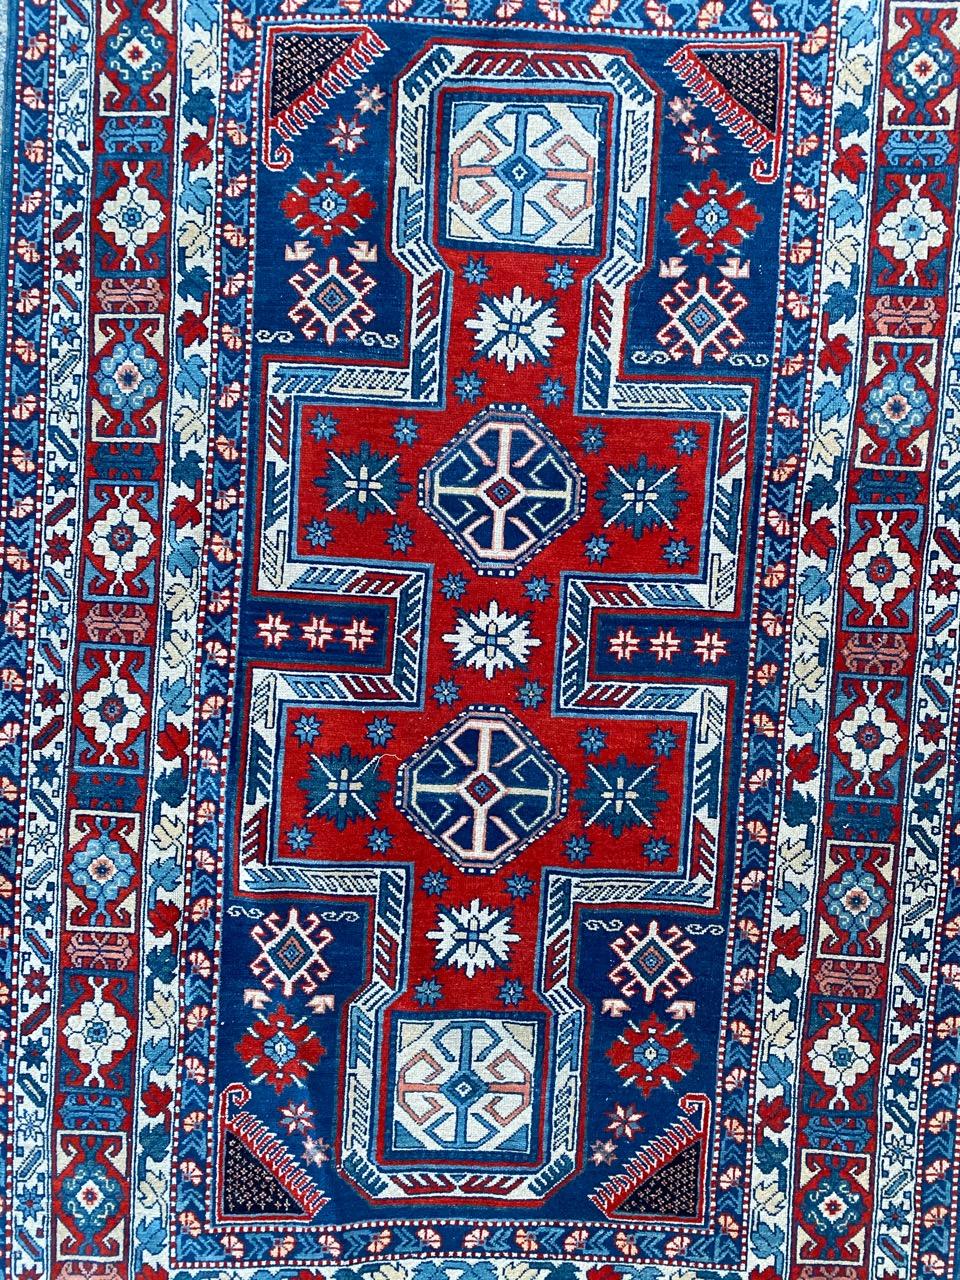 Sehr schöner Chirwan-Teppich aus der Mitte des Jahrhunderts mit schönem geometrischem Muster im Kazak-Stil und schönen Farben, vollständig und fein handgeknüpft mit Wollsamt auf Baumwollbasis.

✨✨✨
